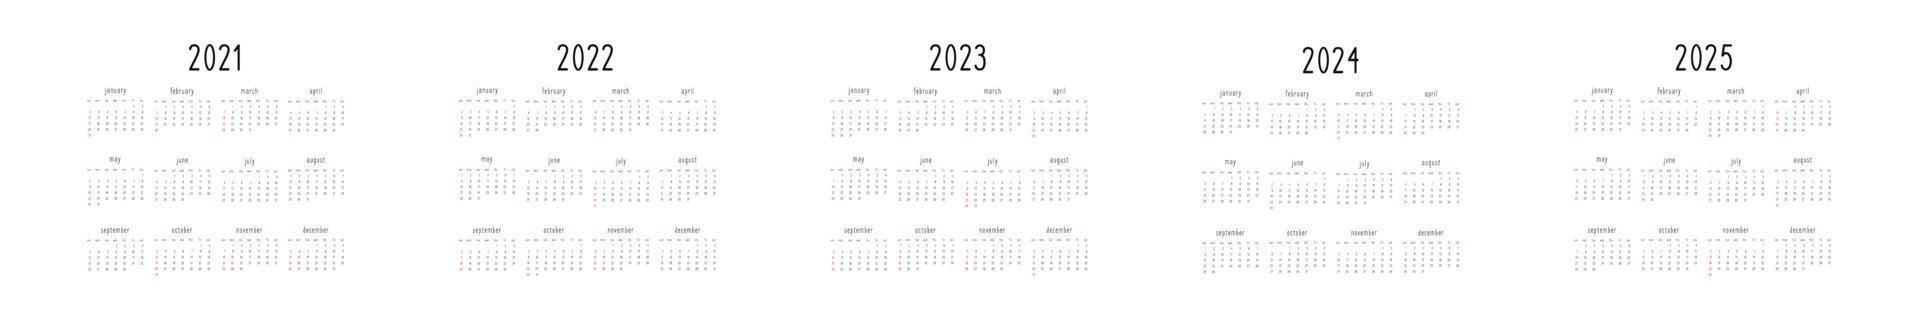 conjunto de calendario 2021 2022 2023 2024 2025 en estilo minimalista en blanco y negro. la semana comienza el domingo vector